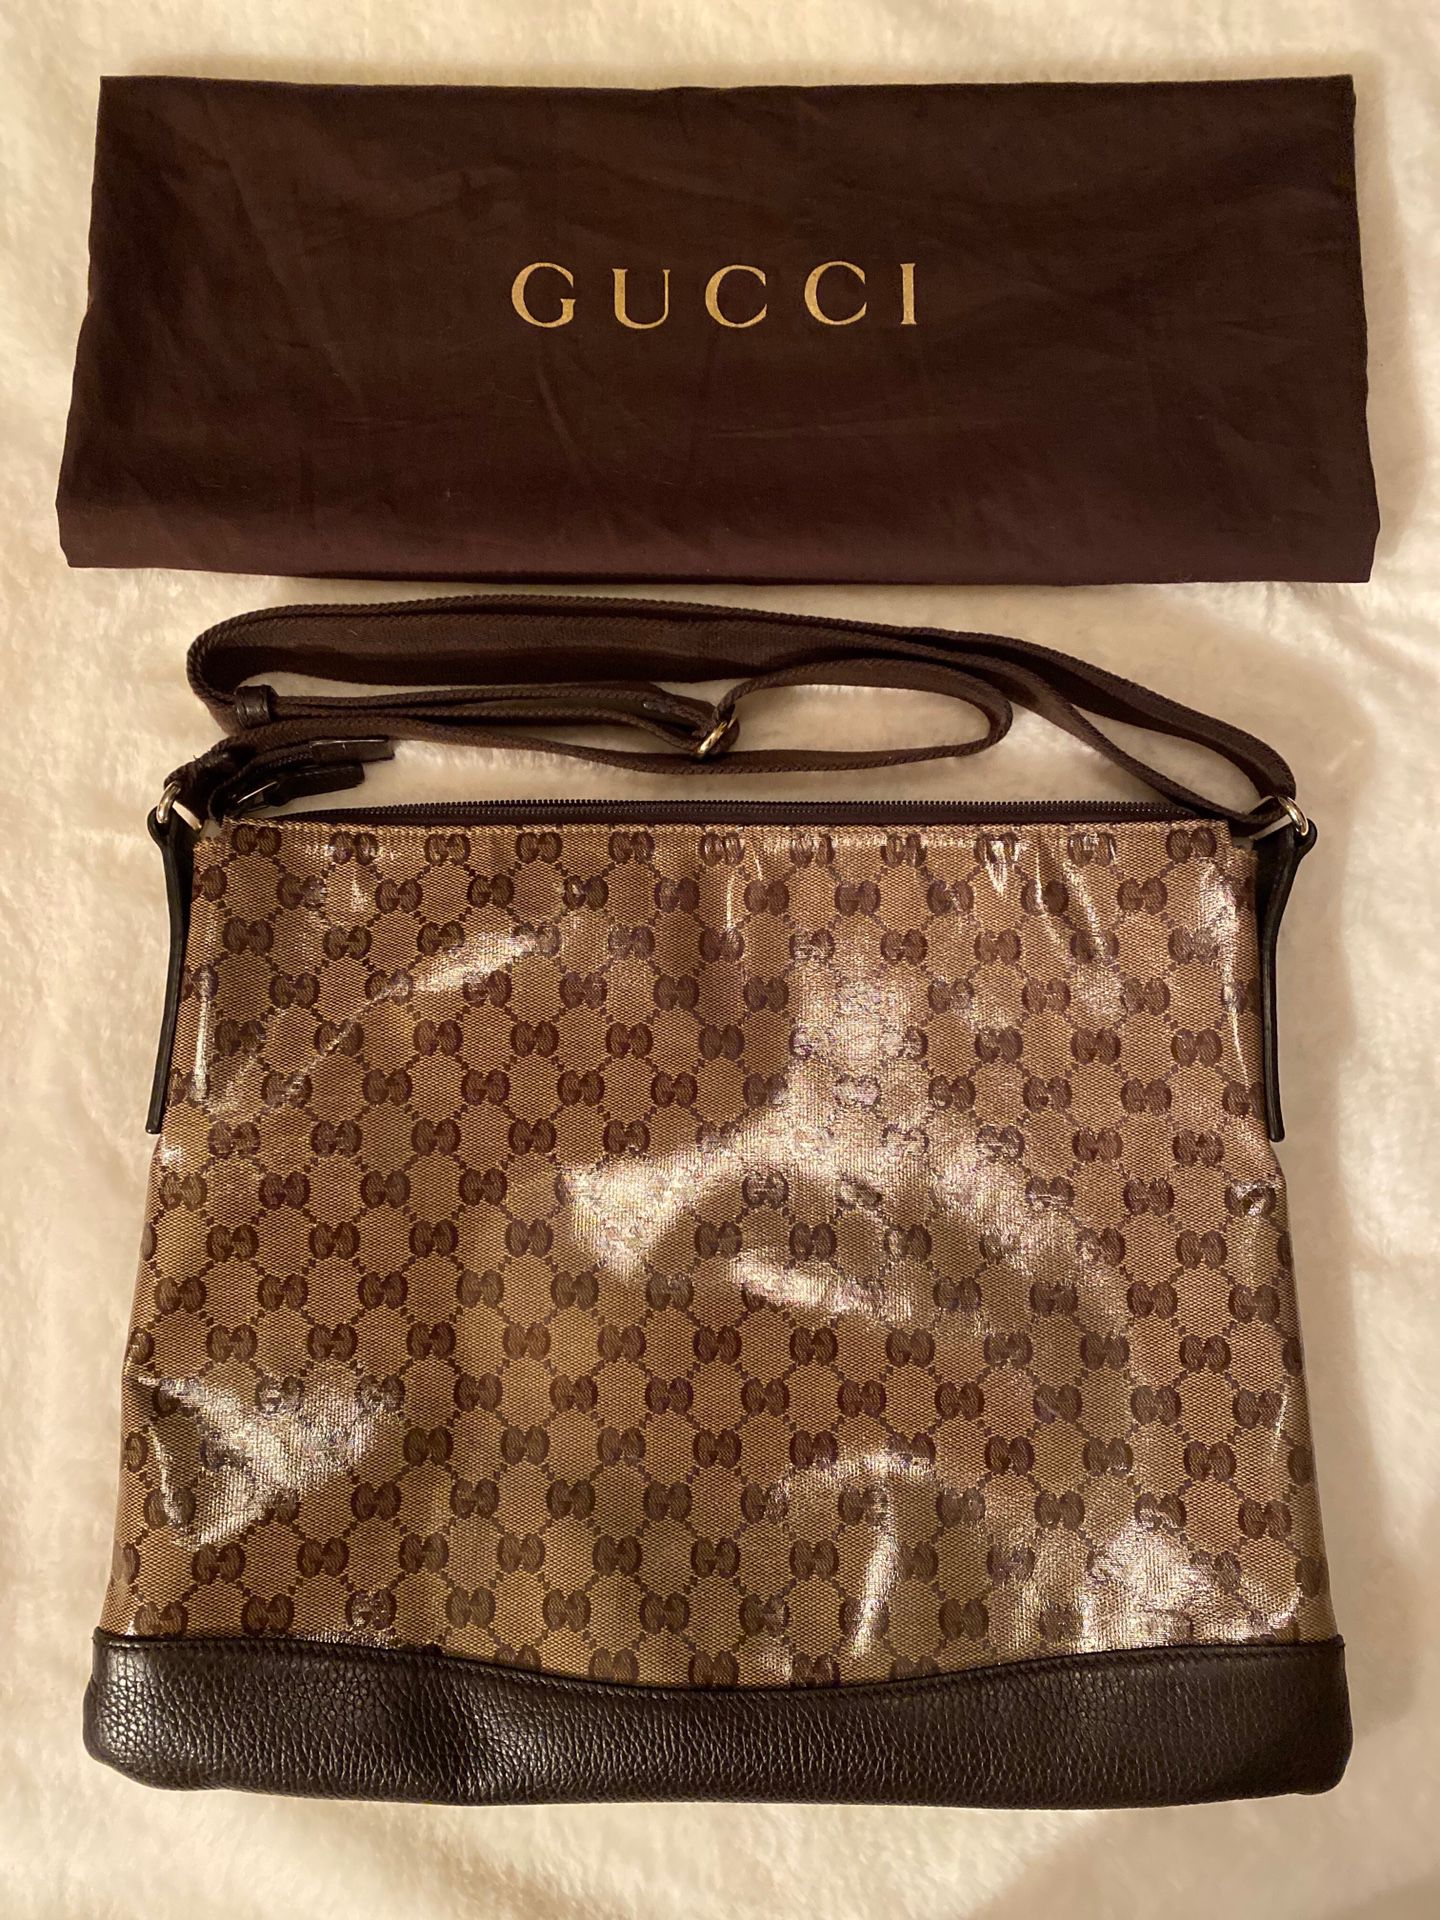 AUTHENTIC Gucci messenger bag